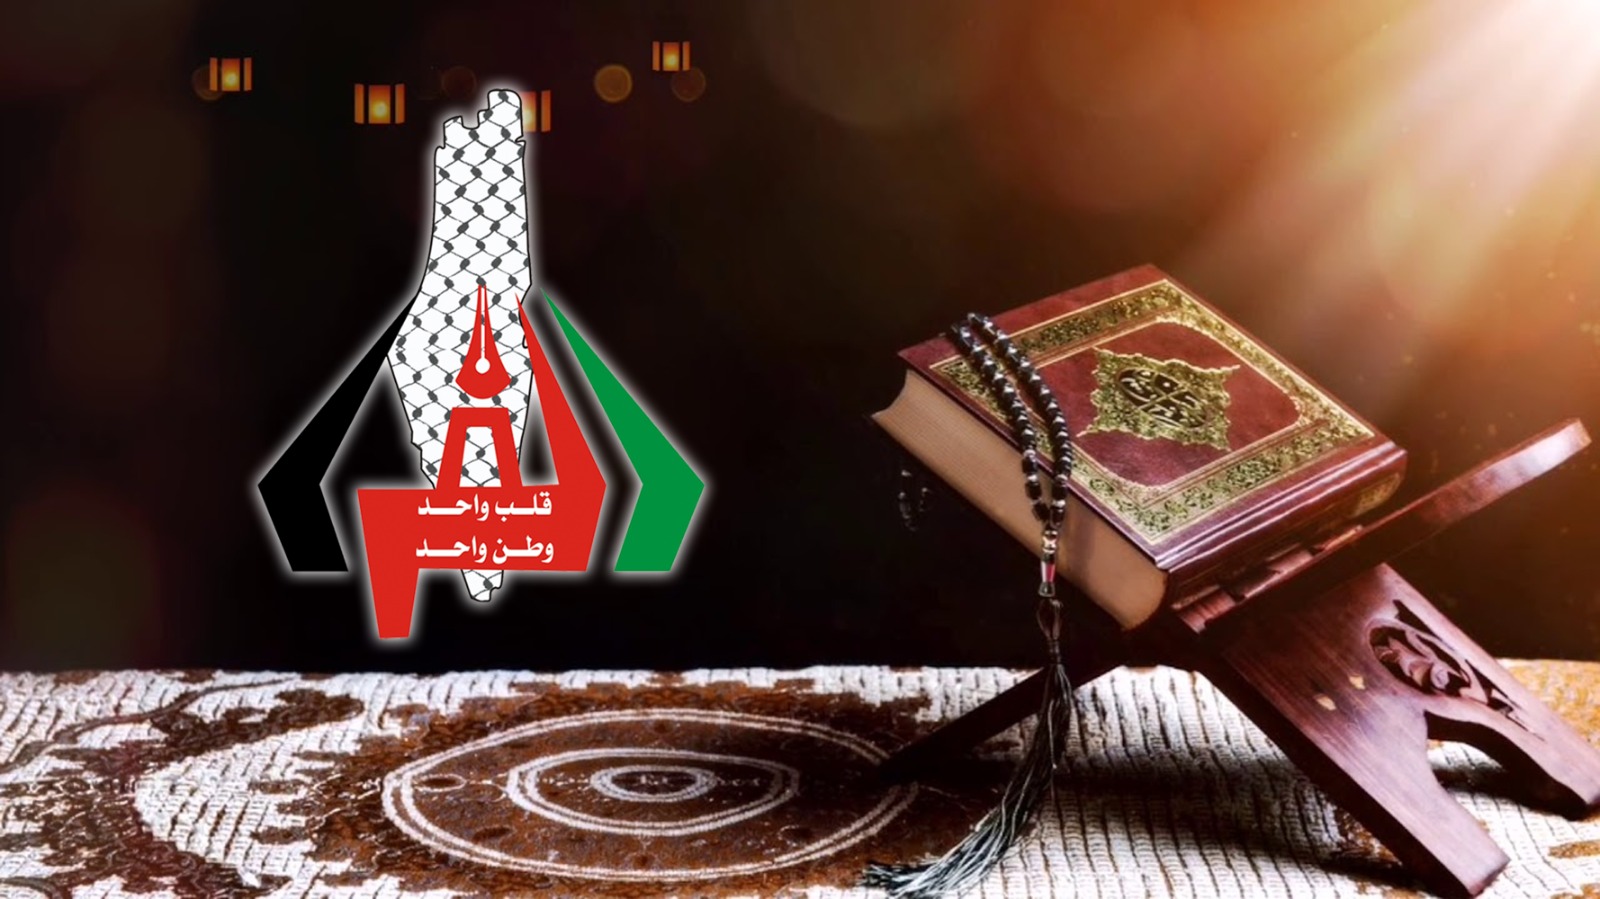 محمد صابر الفرا يسرد القرآن الكريم كاملا في جلسة واحدة